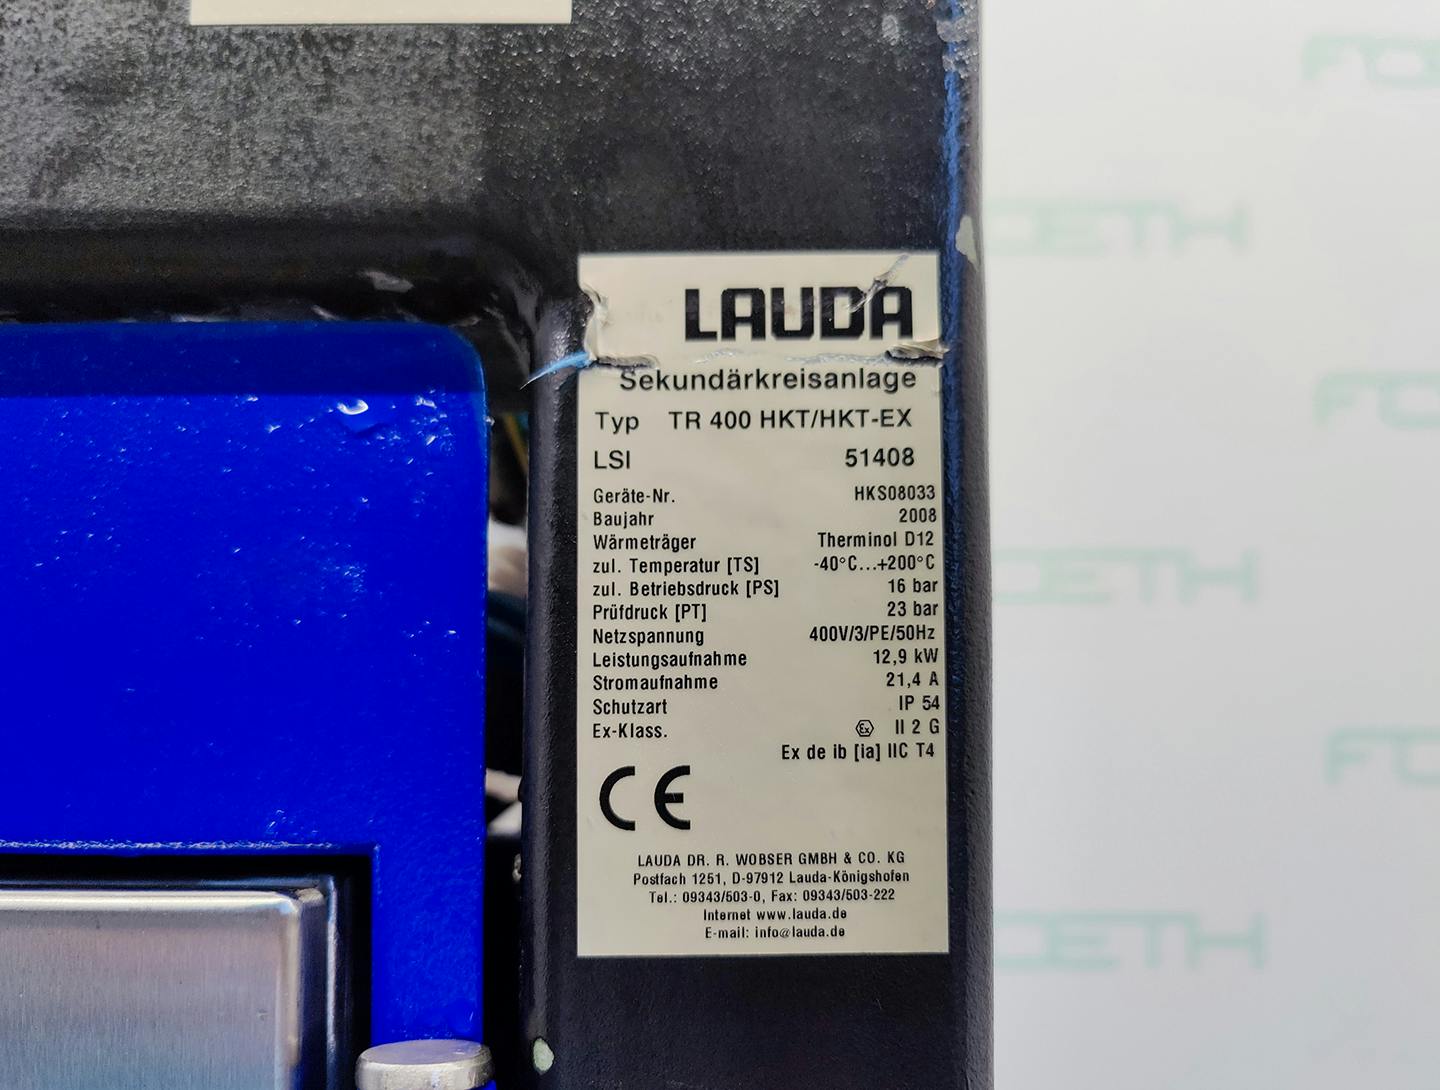 Lauda TR400 HKT/HKT-EX "secondary circuit system" - Atemperador - image 6